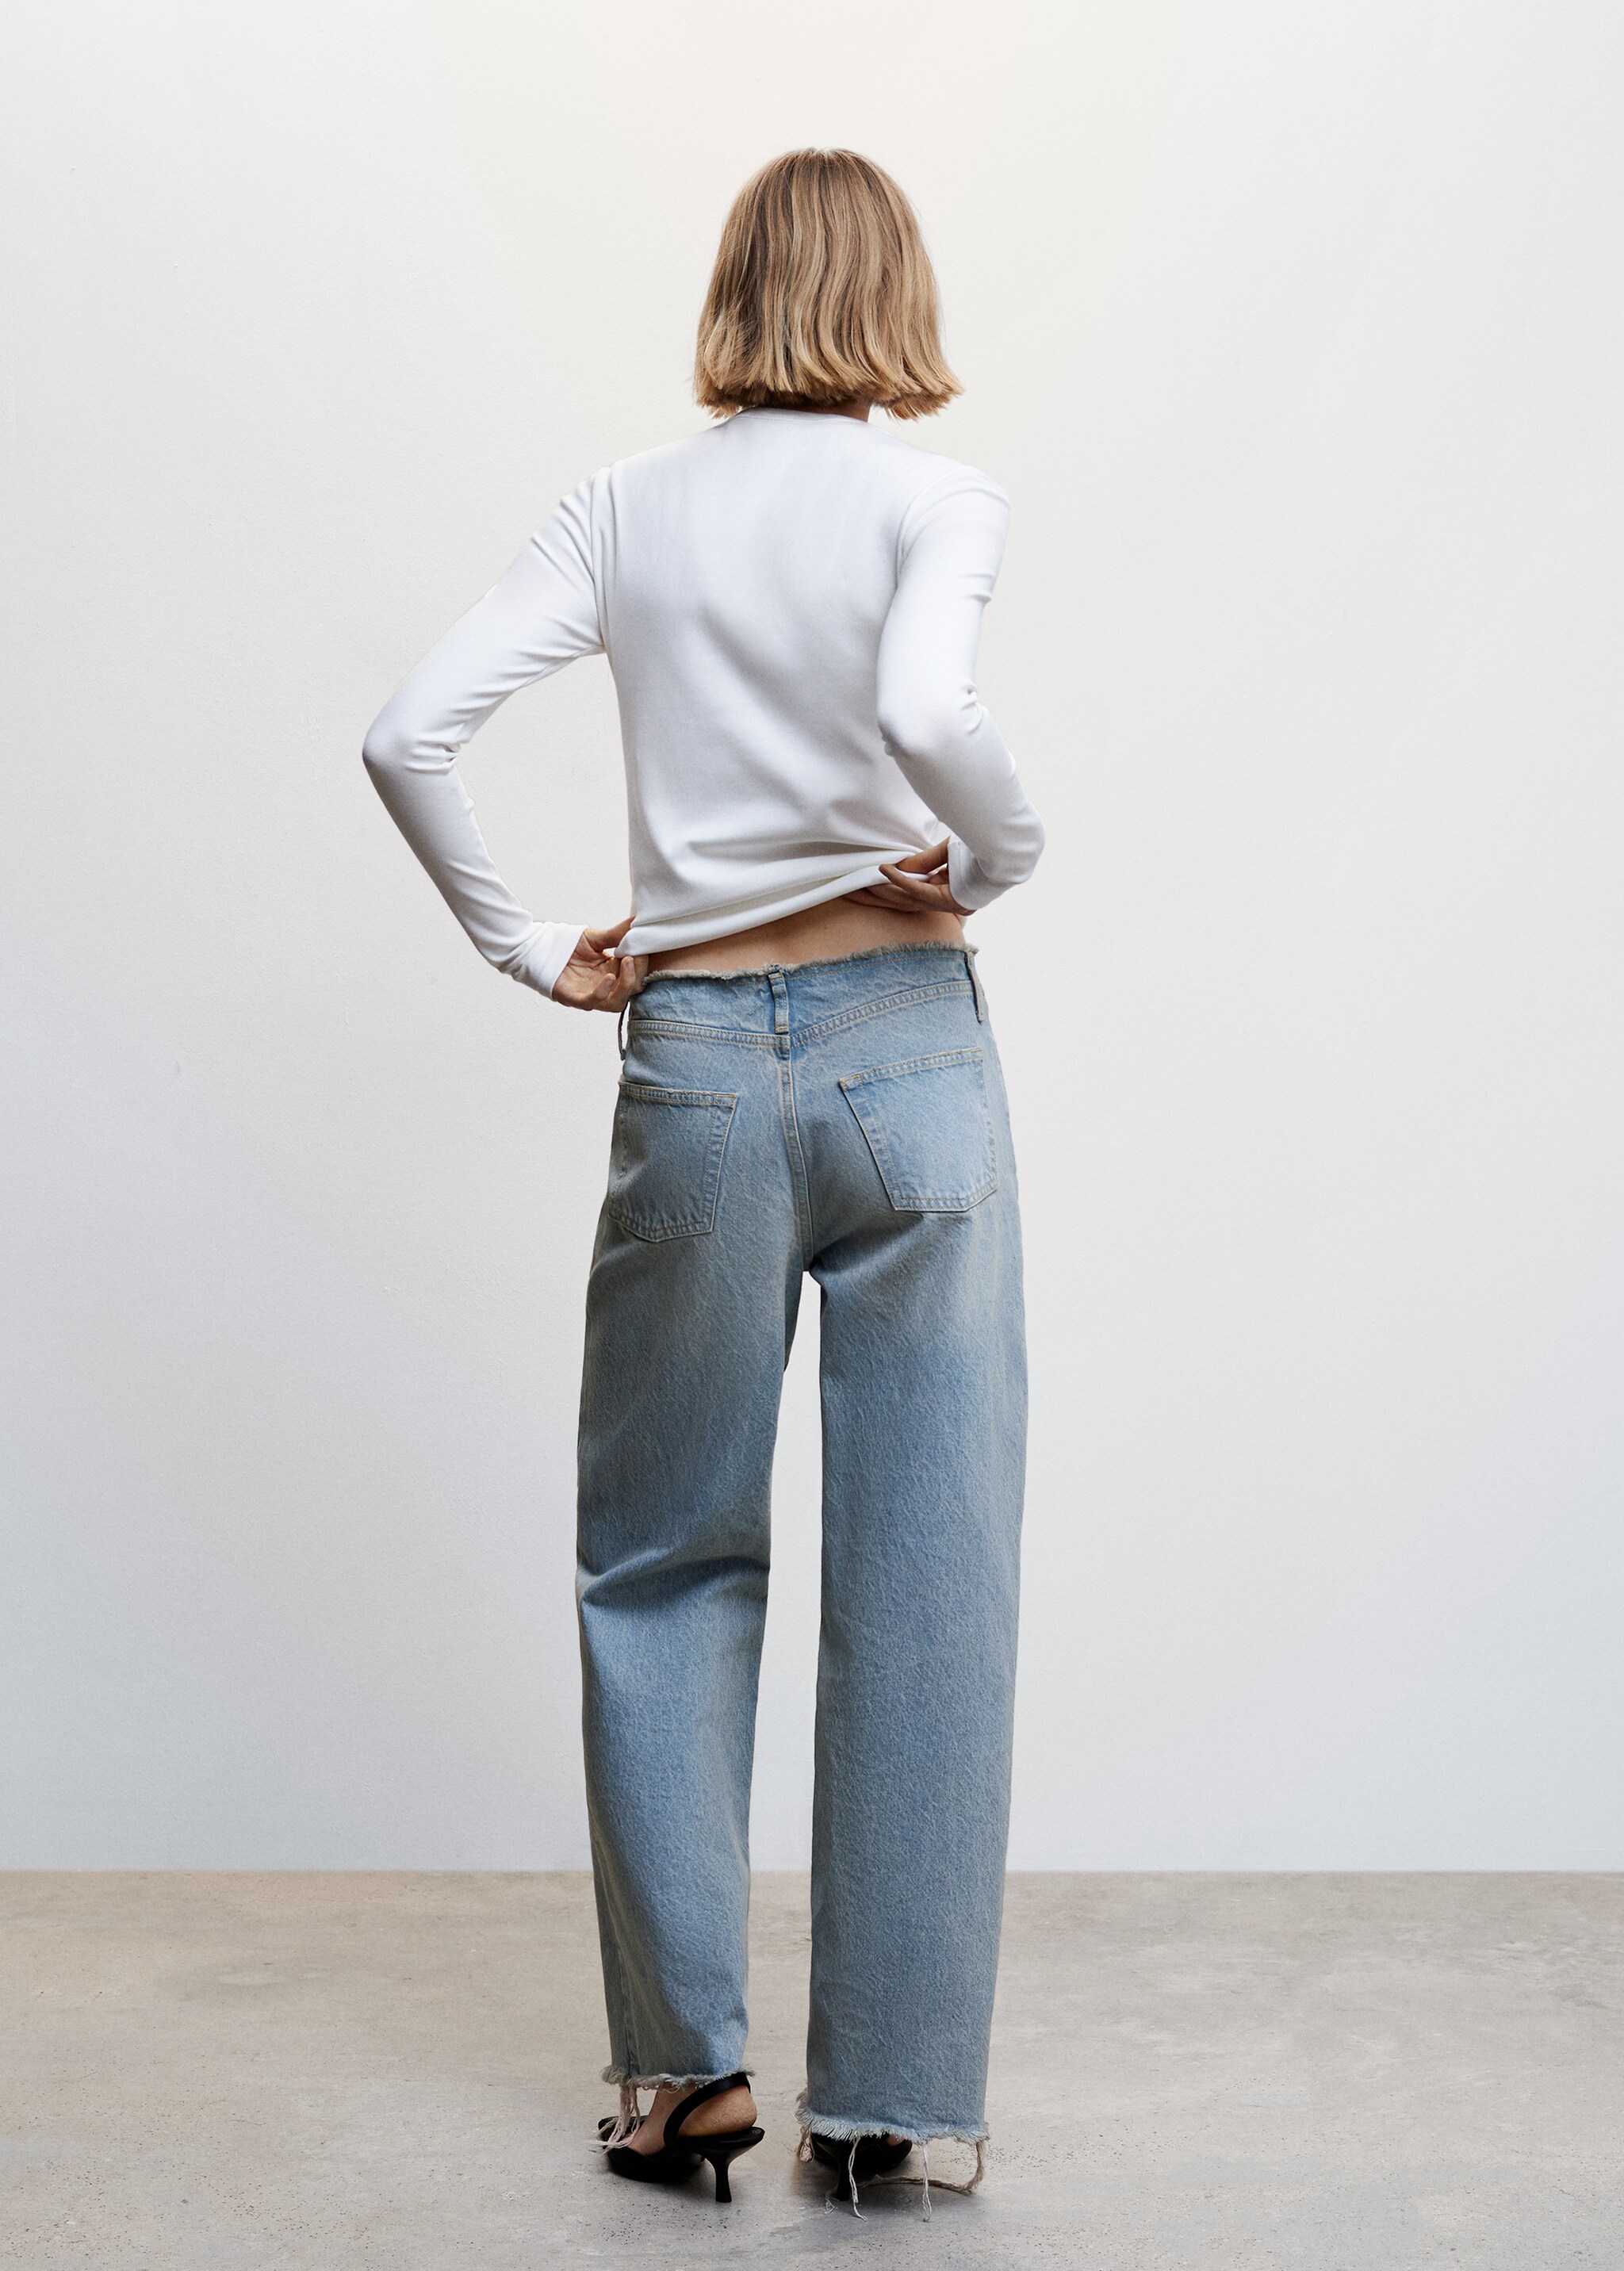 Jeans wideleg tiro medio - Reverso del artículo